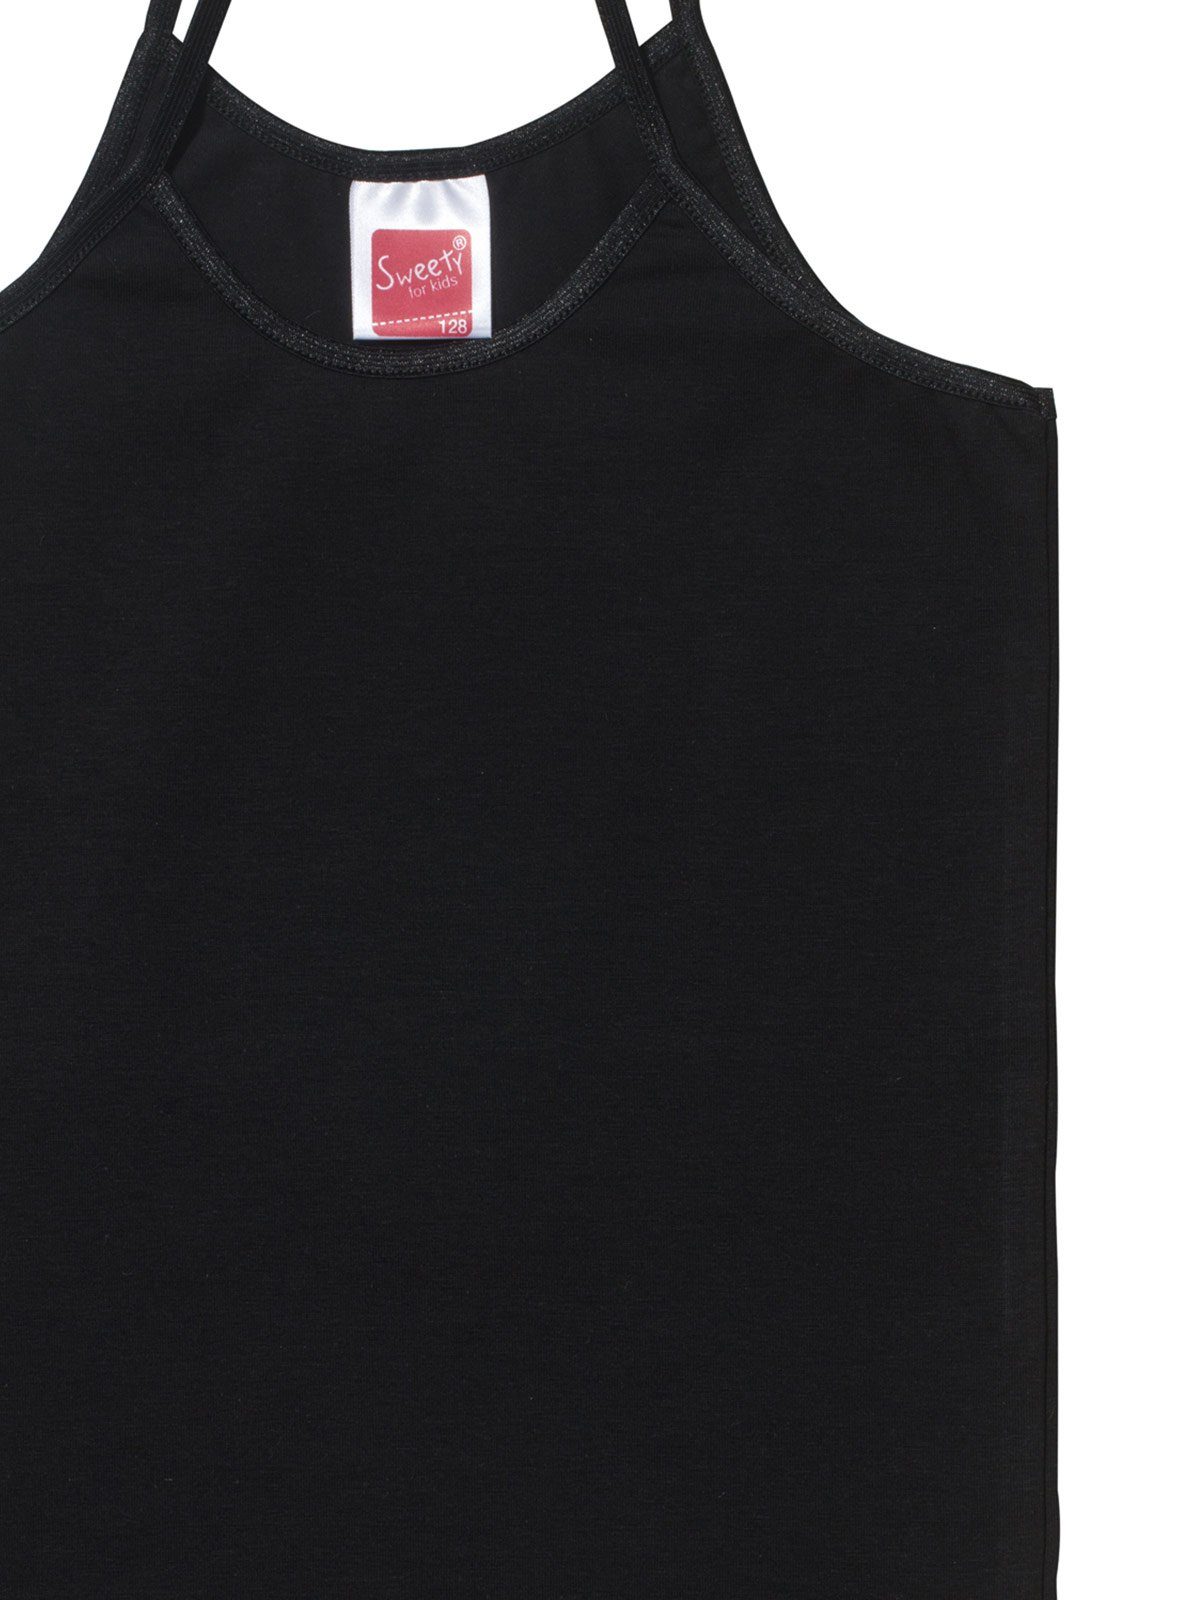 4er (Spar-Set, for Sparpack schwarz Unterhemd Markenqualität Mädchen Trägerhemd Sweety 4-St) Feinripp Kids hohe